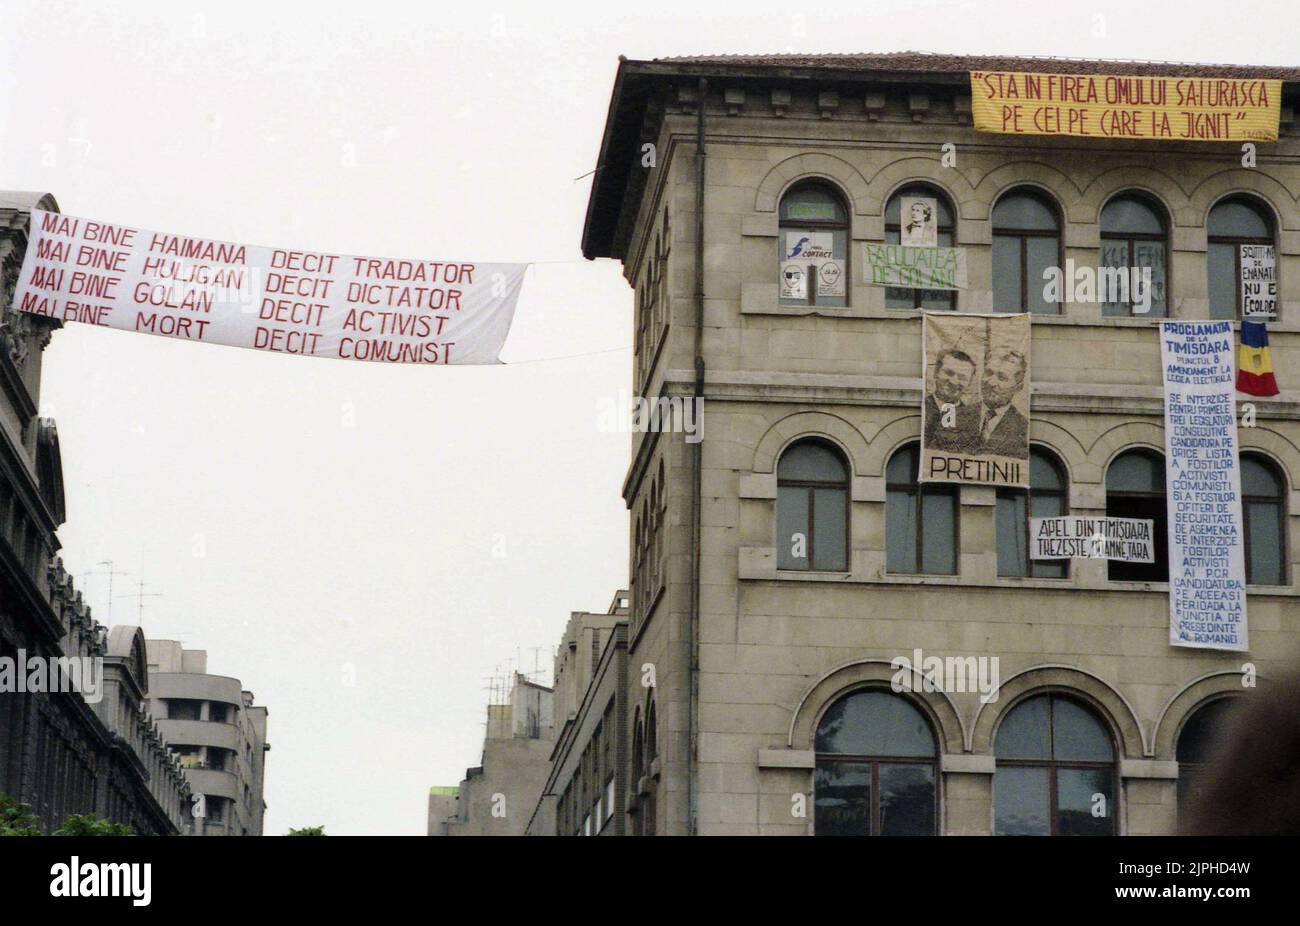 Bucarest, Romania, aprile 1990. 'Golaniada', una grande protesta anti-comunismo in Piazza dell'Università dopo la Rivoluzione rumena del 1989. La gente si riunirebbe ogni giorno per protestare contro gli ex comunisti che hanno preso il potere dopo la Rivoluzione. Vari striscioni sono appesi alle pareti dell'edificio universitario. Uno di loro mostra il dittatore Ceausescu e il presidente Iliescu con la spiegazione 'amici'. Foto Stock